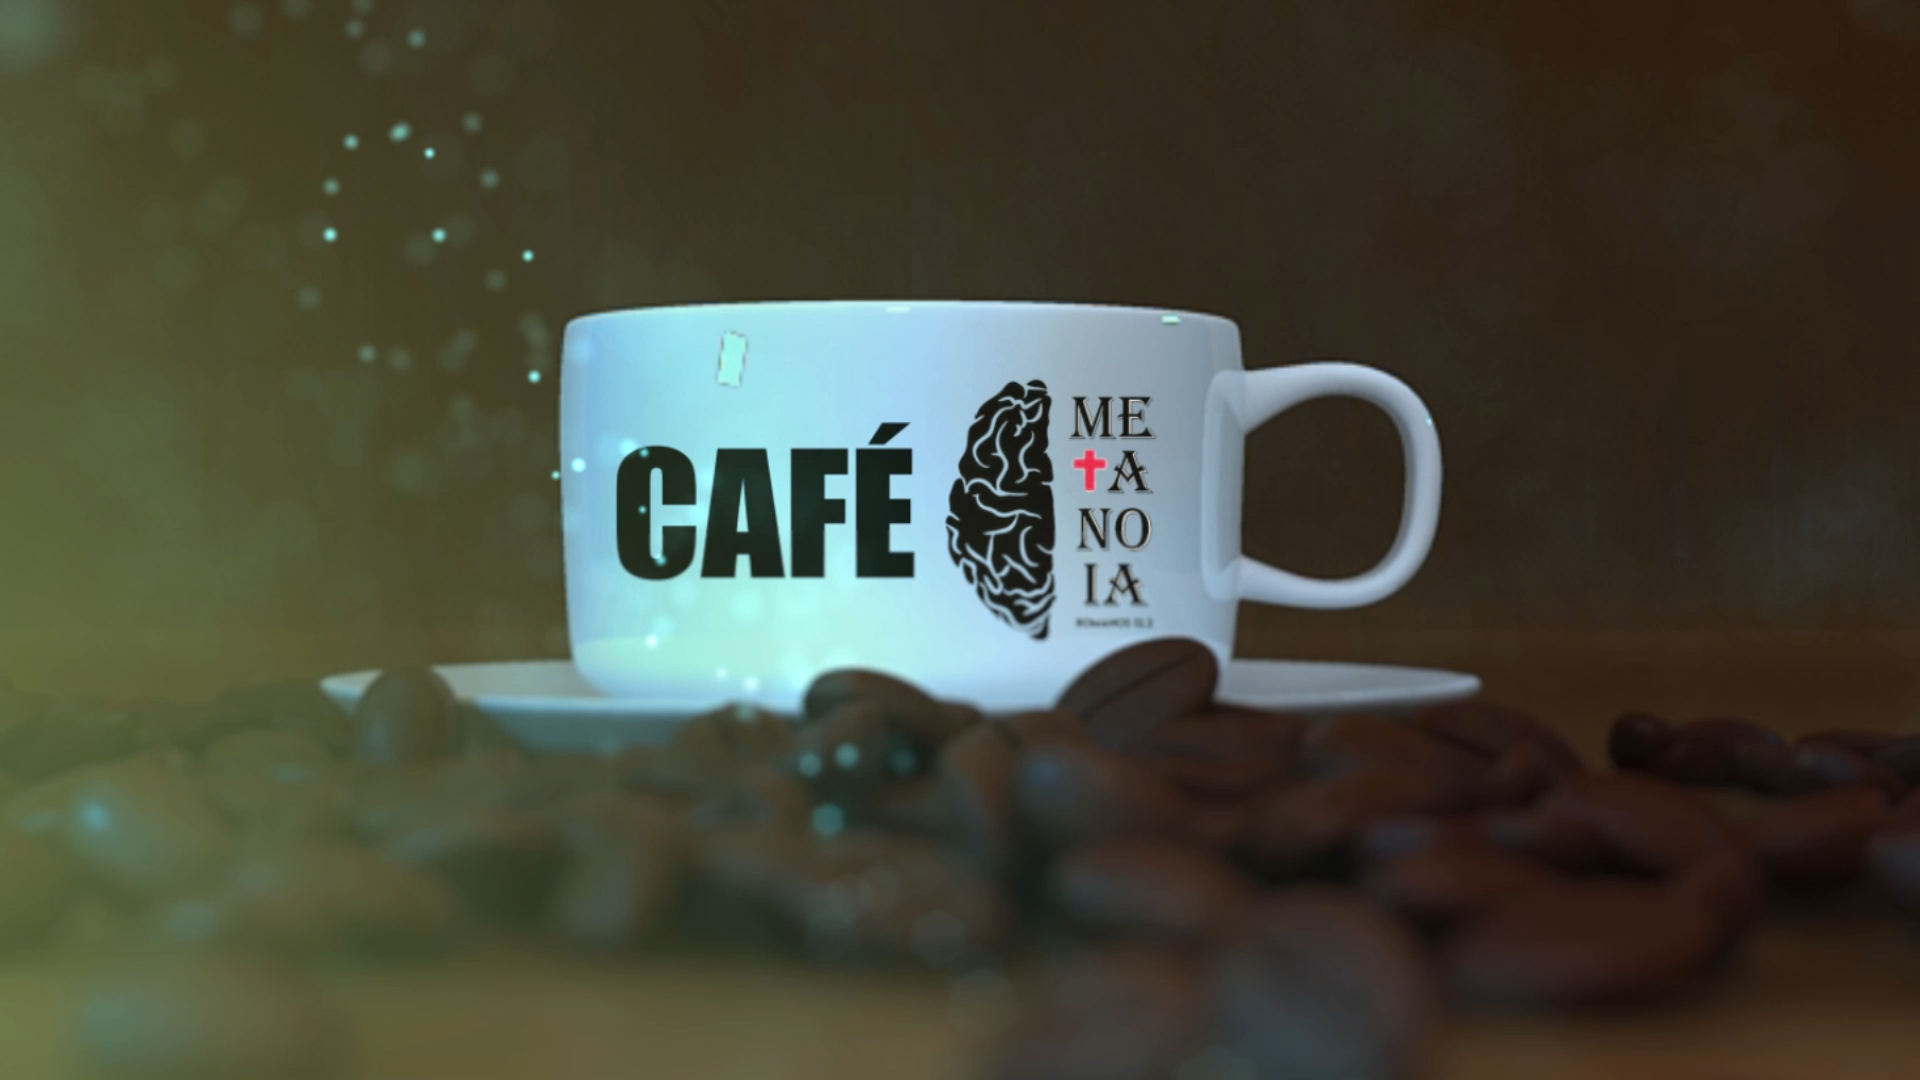 Programa café metanoia: Apresentação neilson santos - News Rondônia